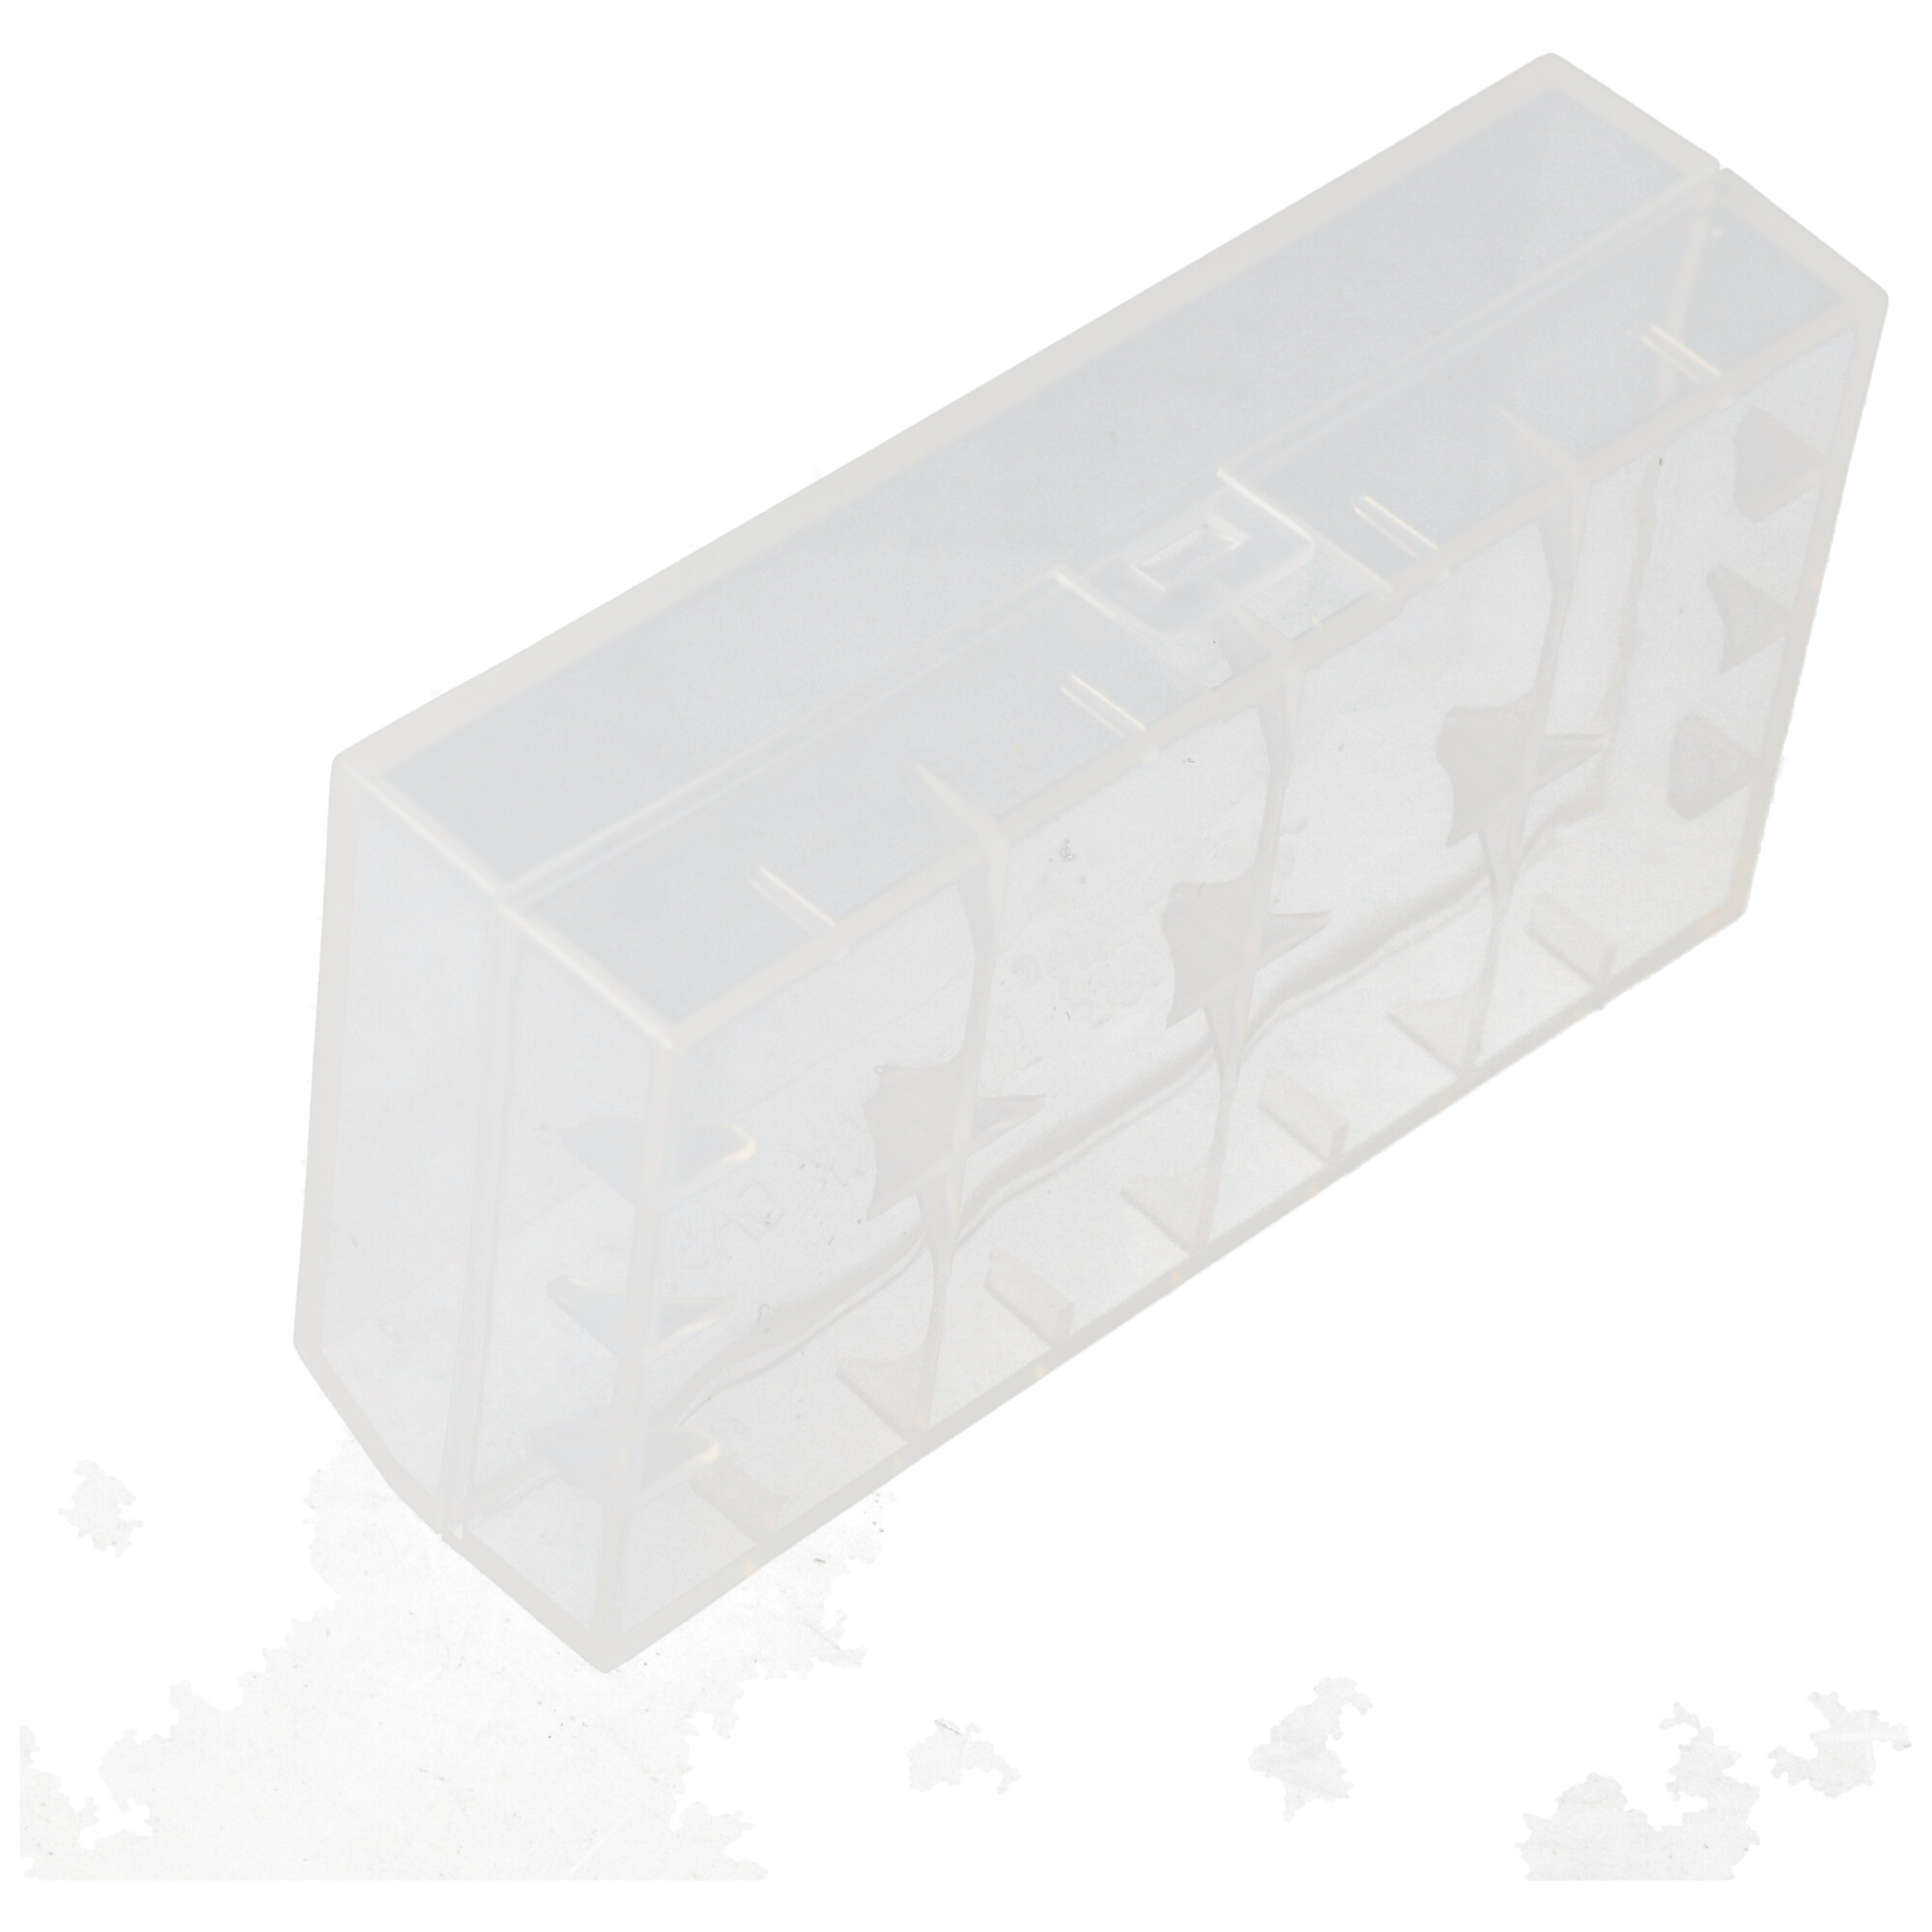 Efest H2 - Plastikbox für 2x 18650 oder 4x 16340